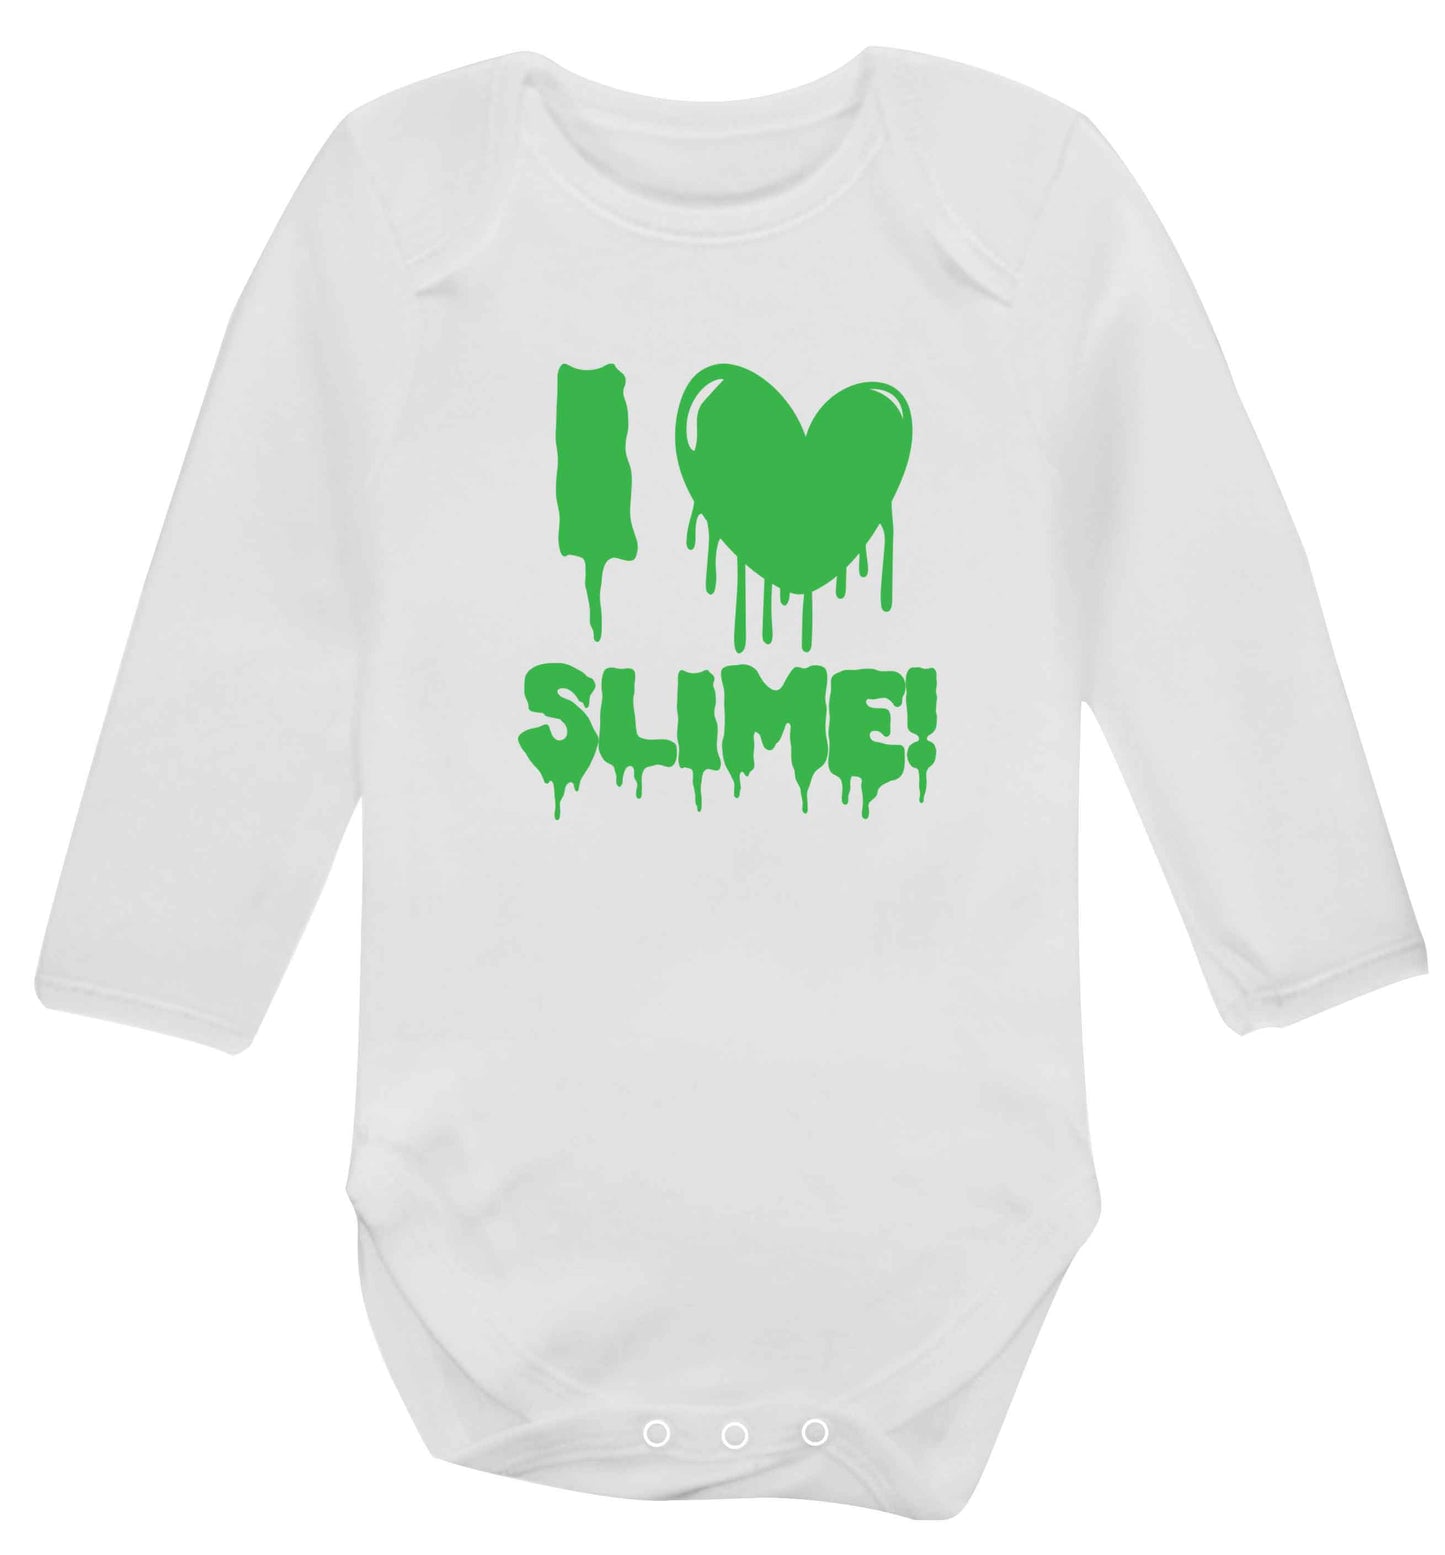 Neon green I love slime baby vest long sleeved white 6-12 months